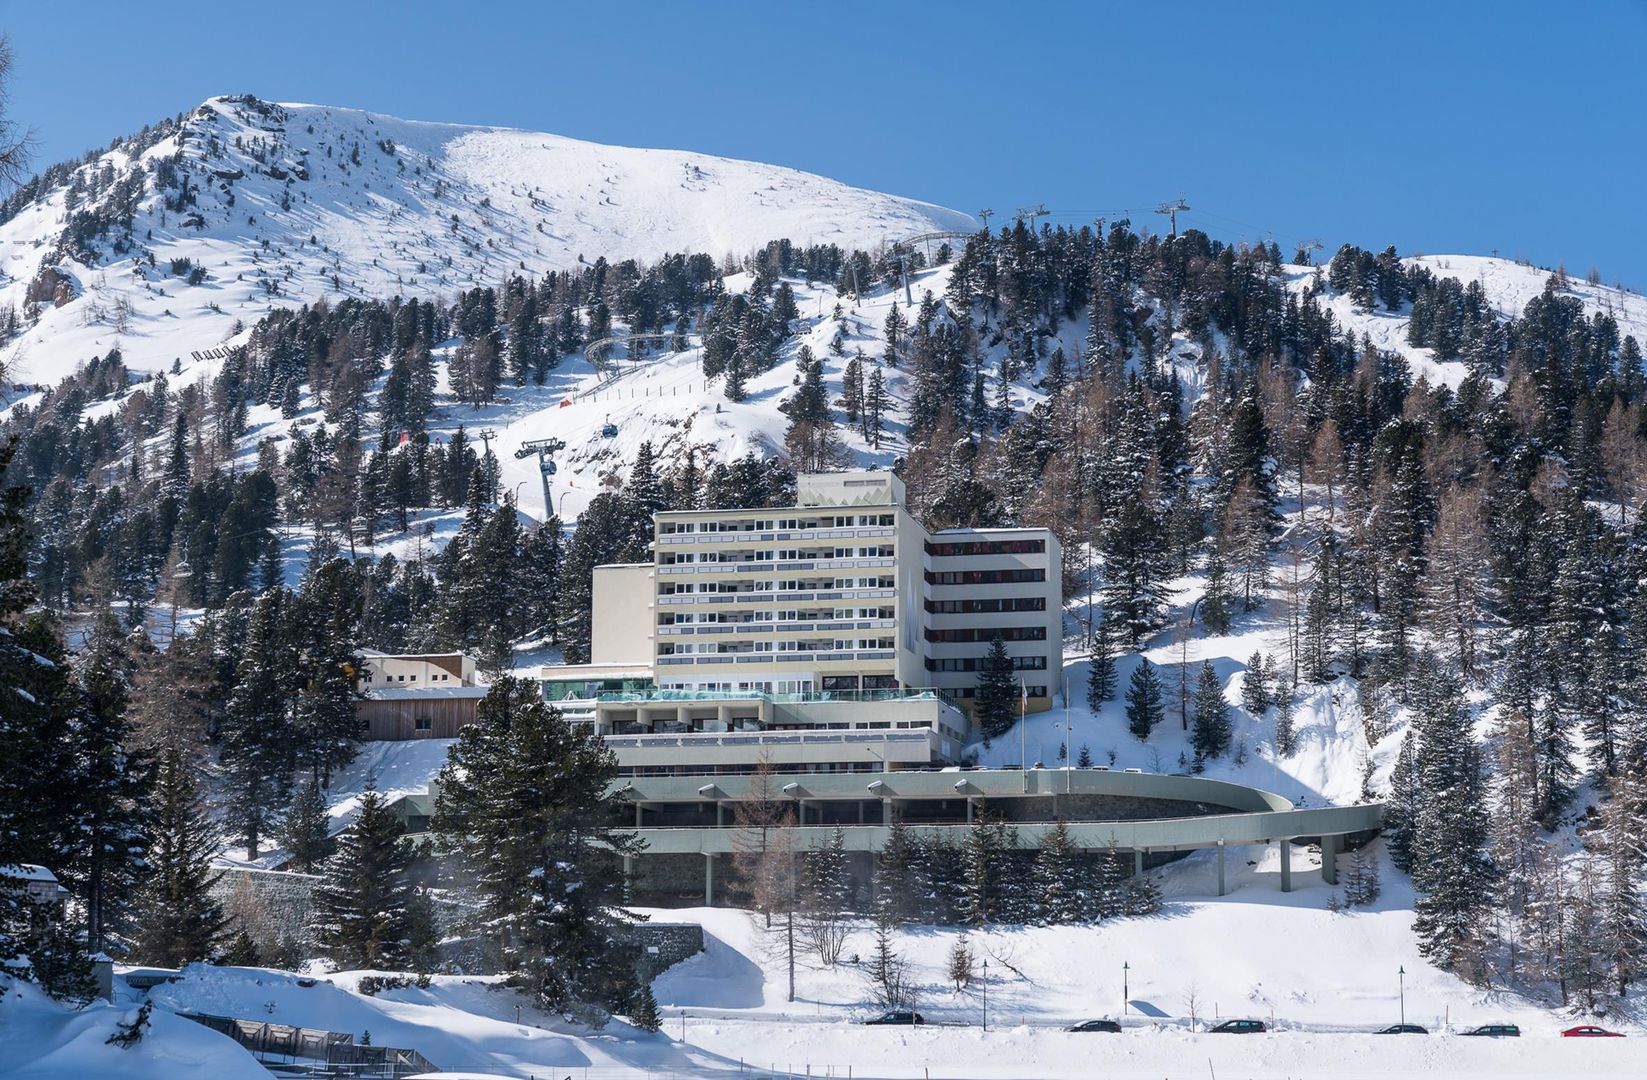 Meer info over Panorama Hotel Turracher Höhe  Alpin Resort & Spa  bij Wintertrex